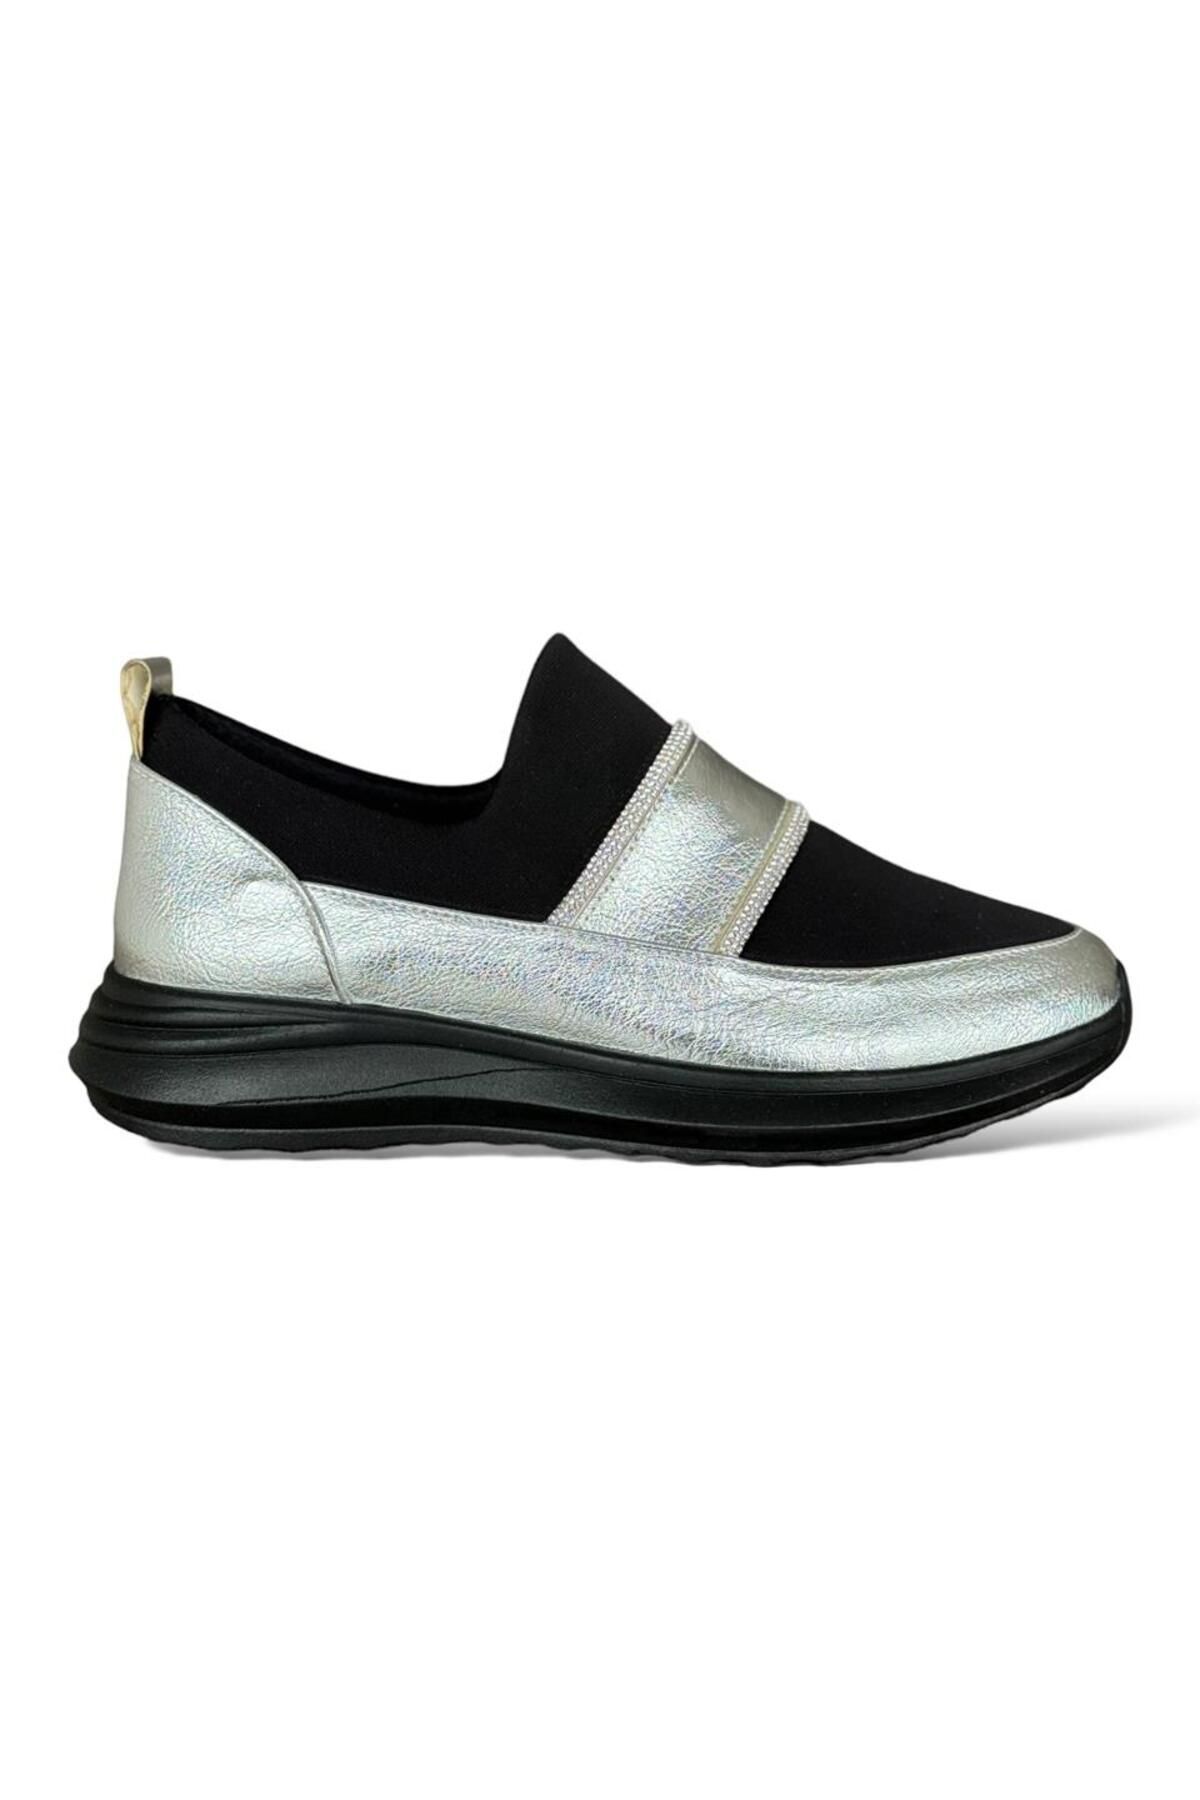 Liger Taş Detaylı Kadın Sneaker Ayakkabı GRİ